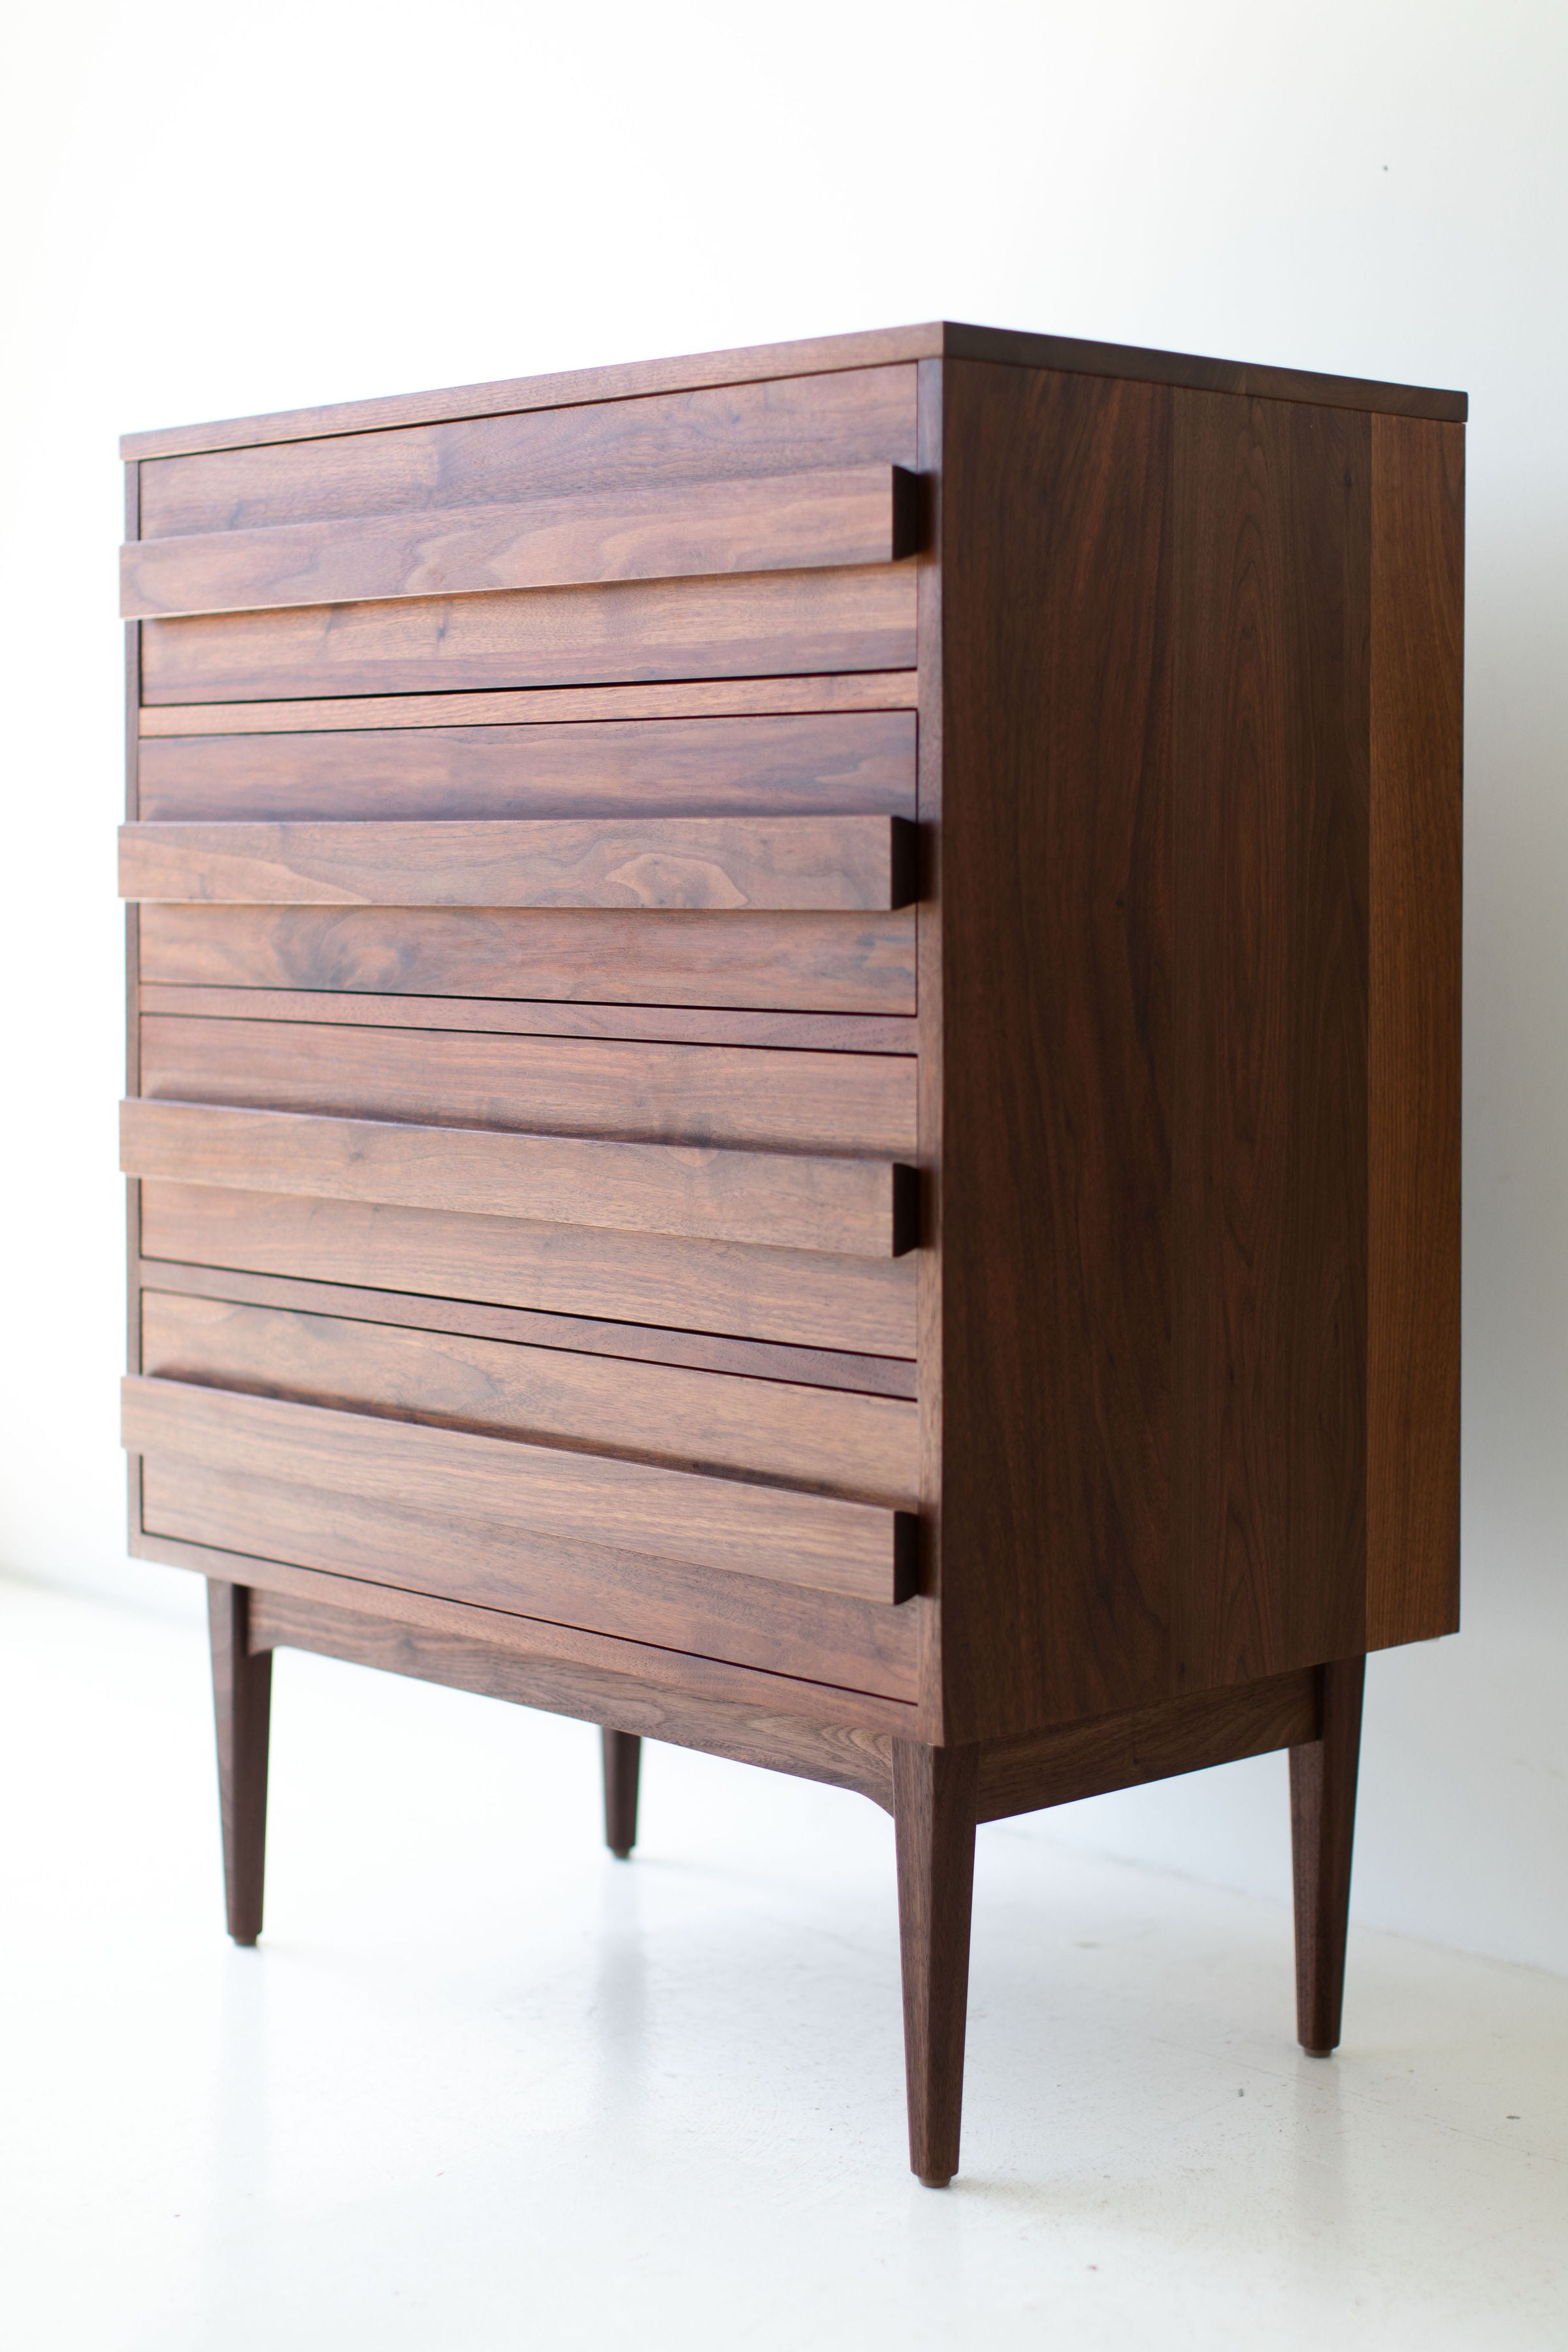 Modern Dresser - 0916 - Version 2